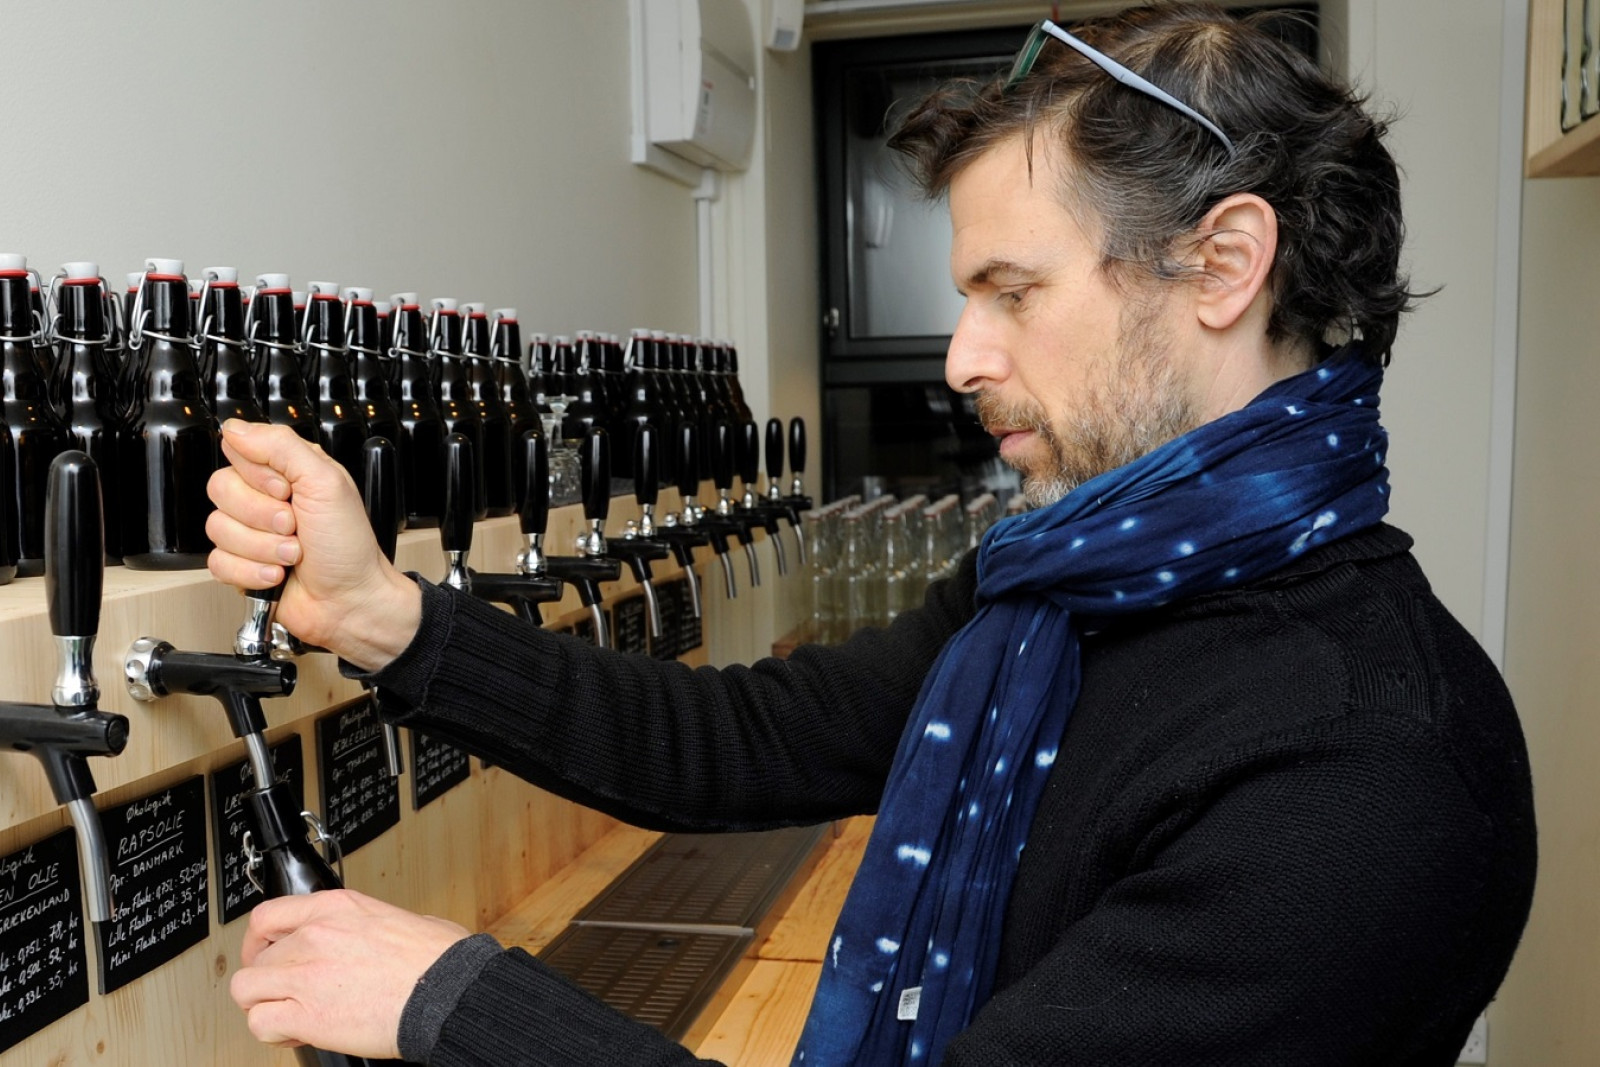 Frédéric Hamburger tapper olie på genbrugsflaske i LØS Market.